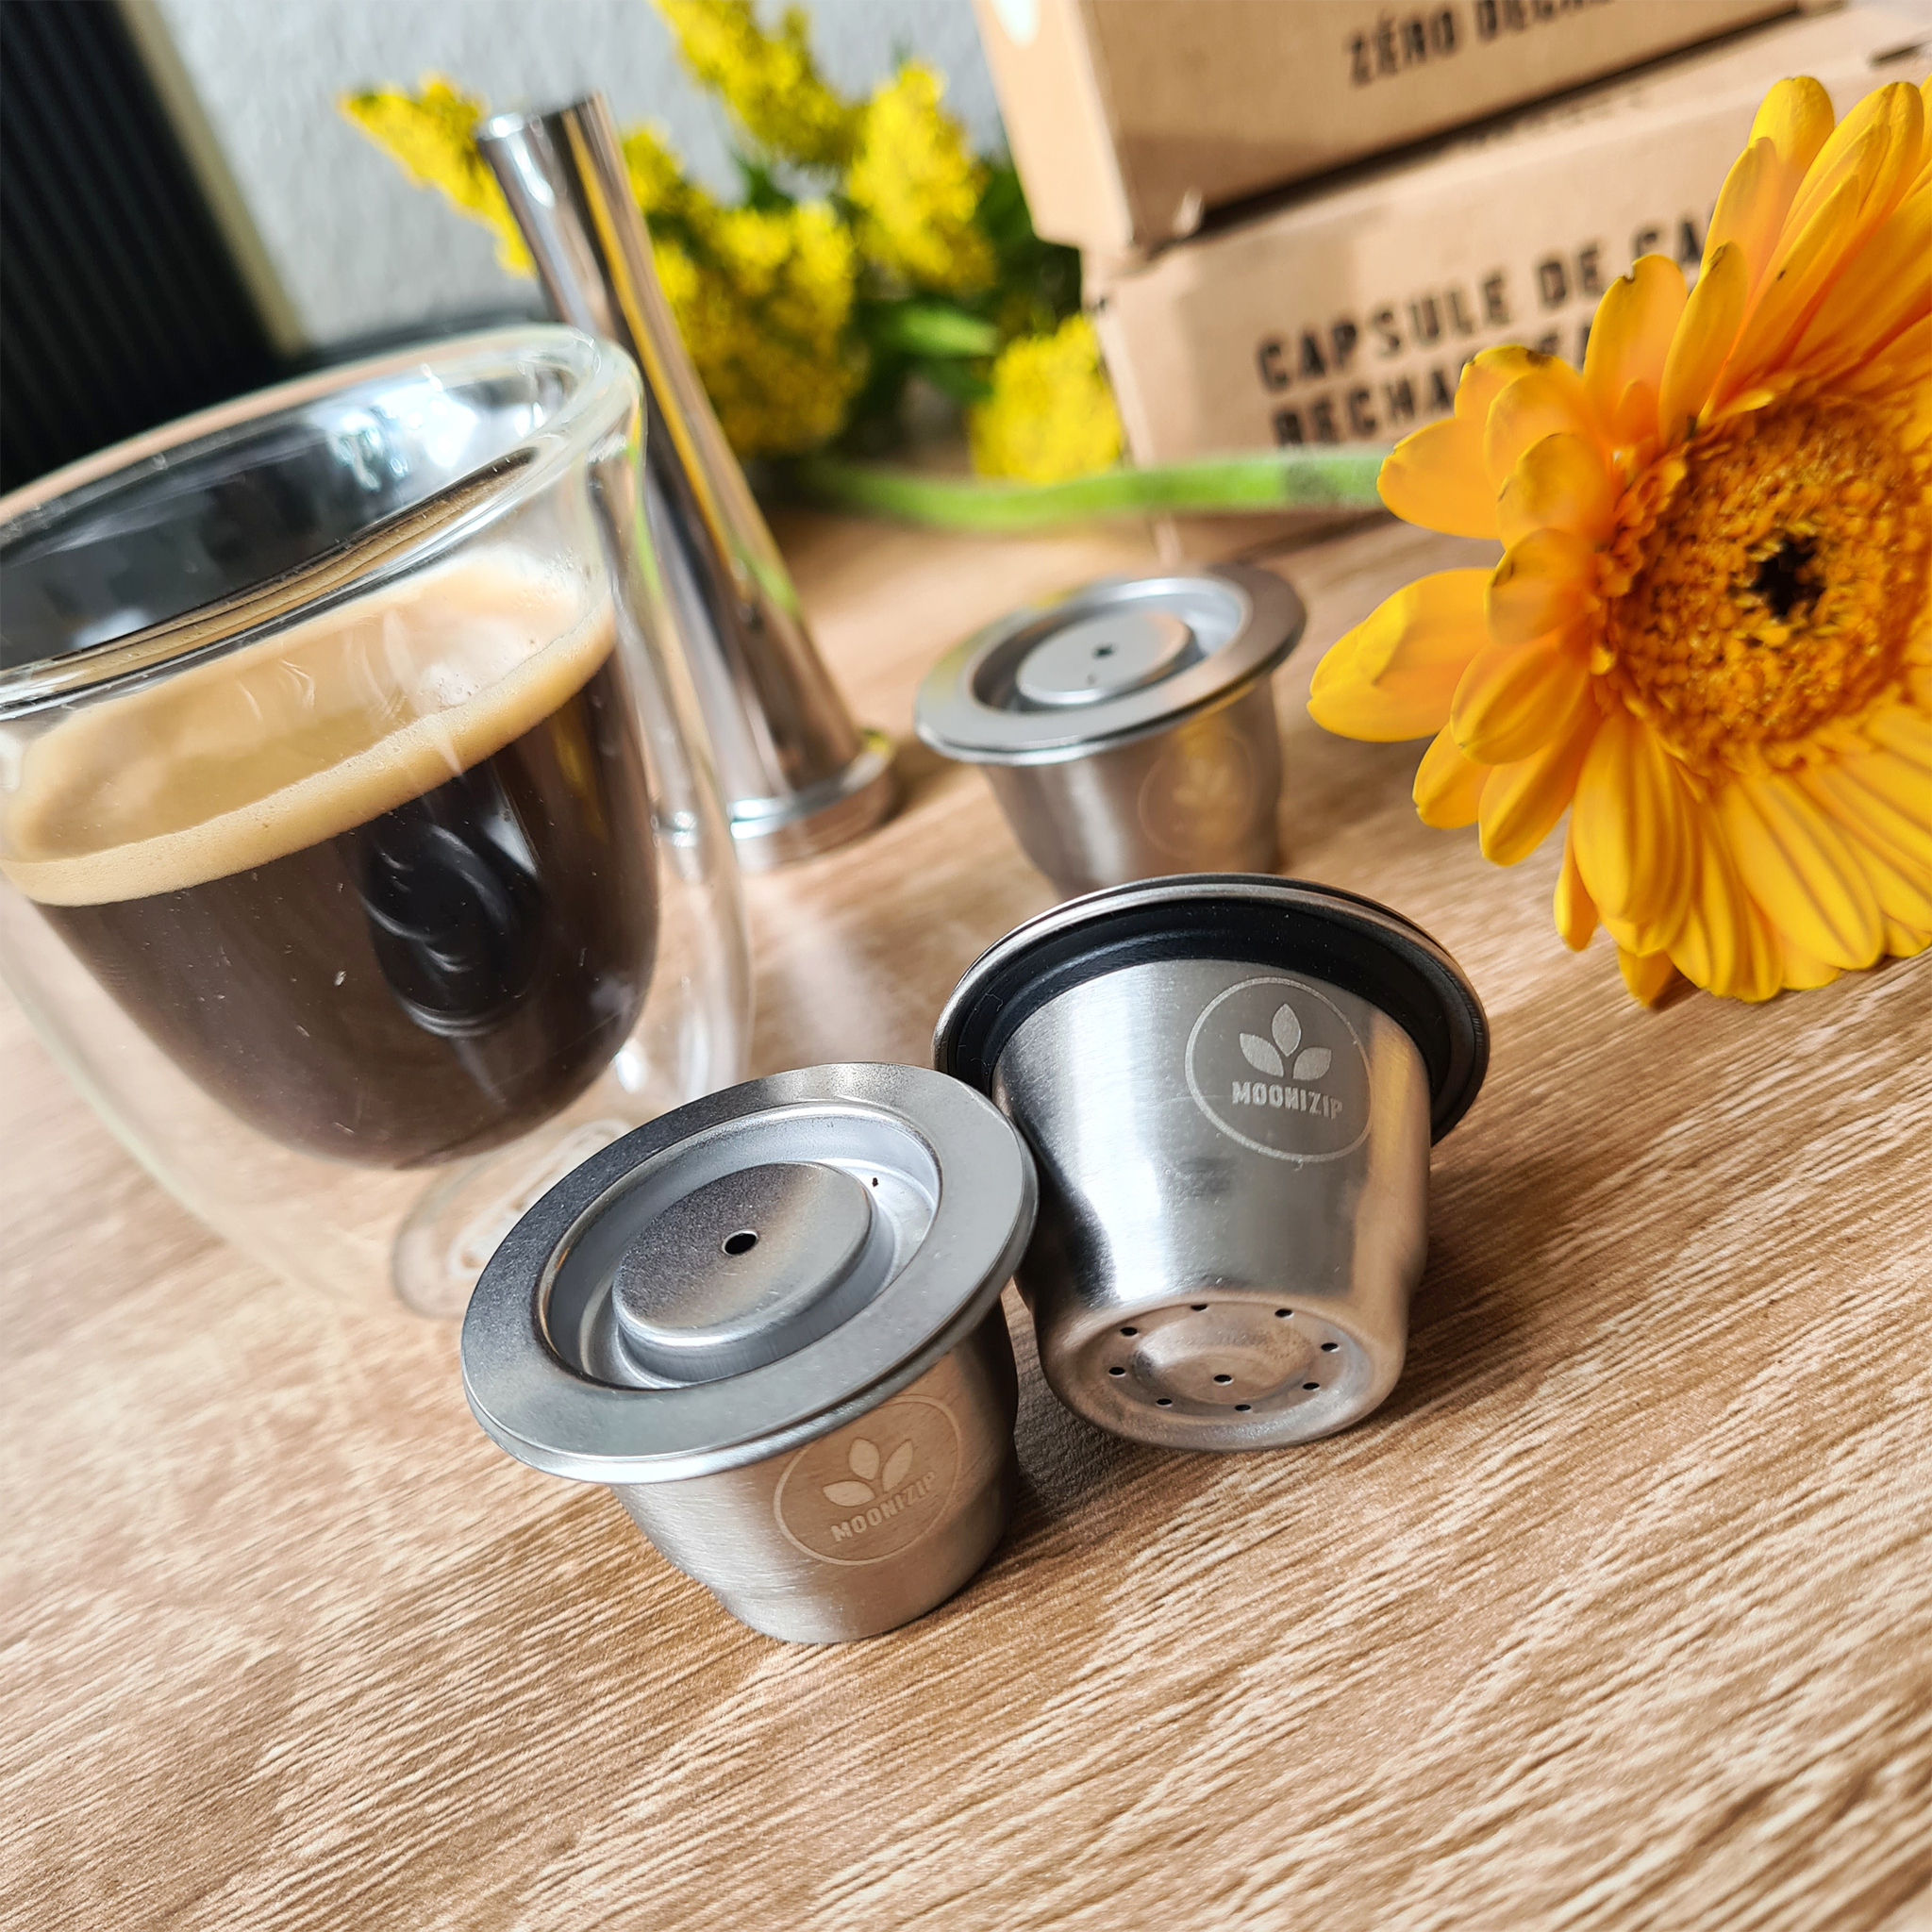 Capsule réutilisable inox Nespresso - Dosette de café